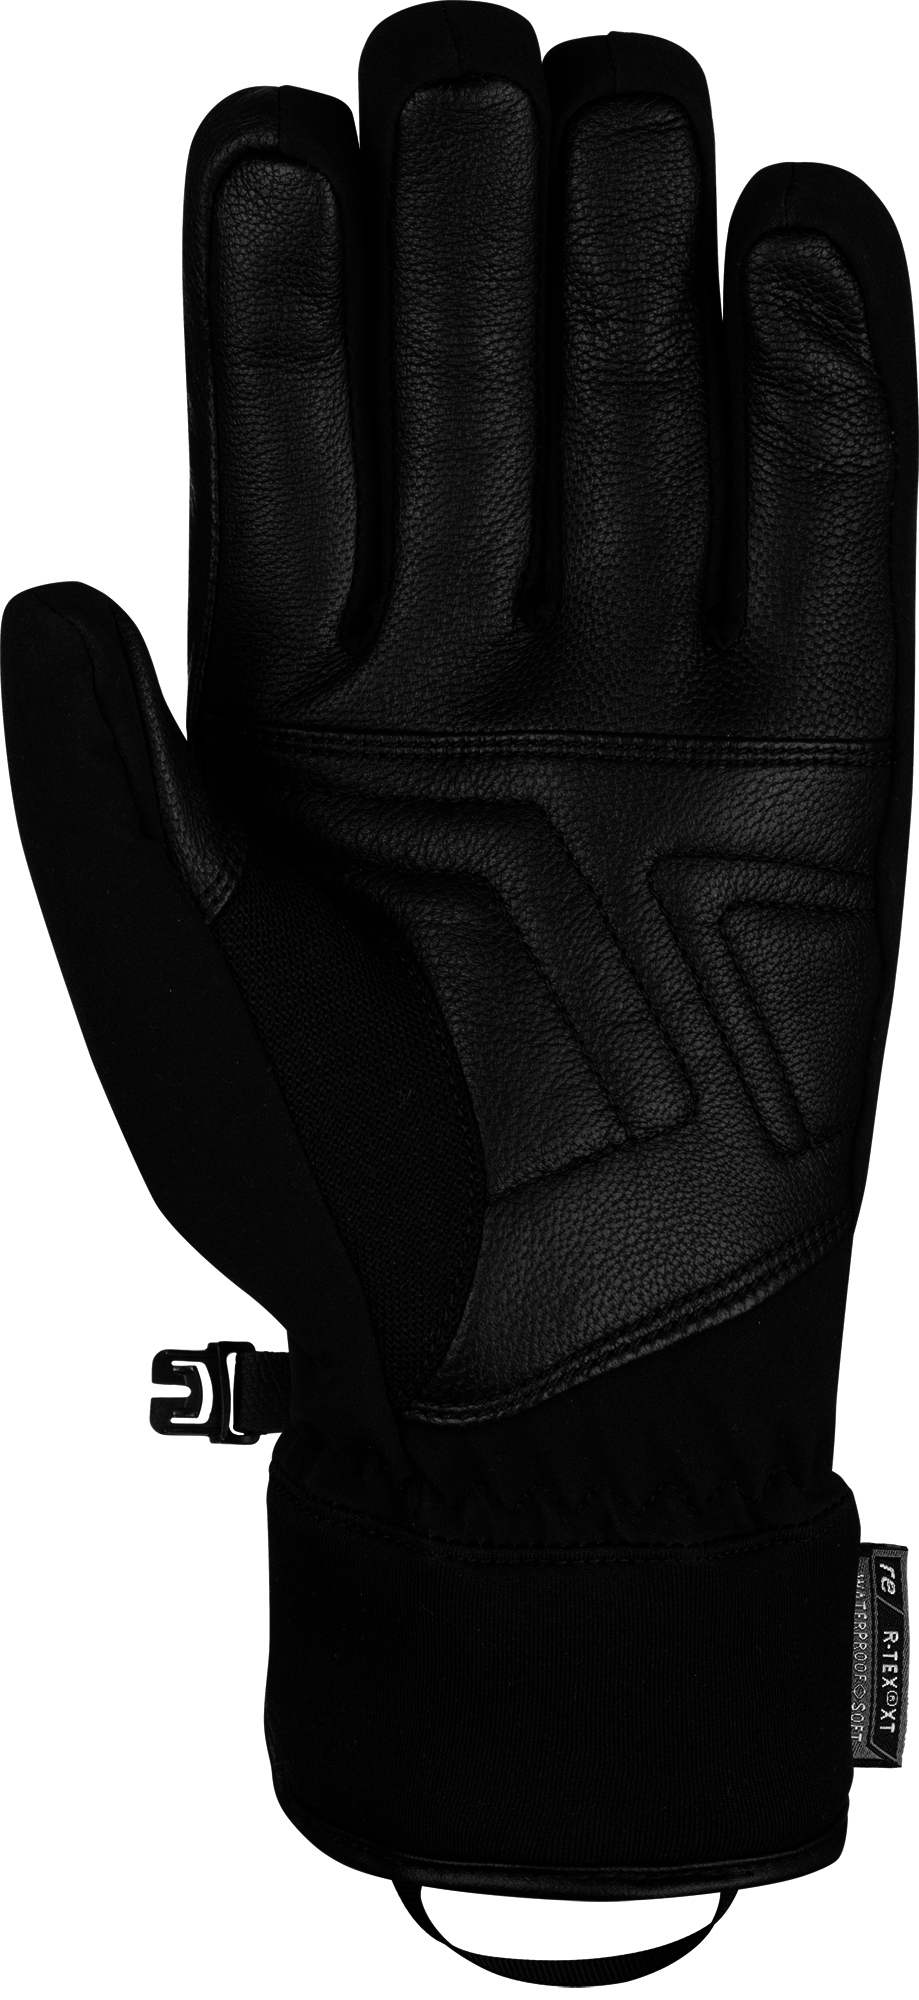 Reusch Storm R-Tex Gents Glove